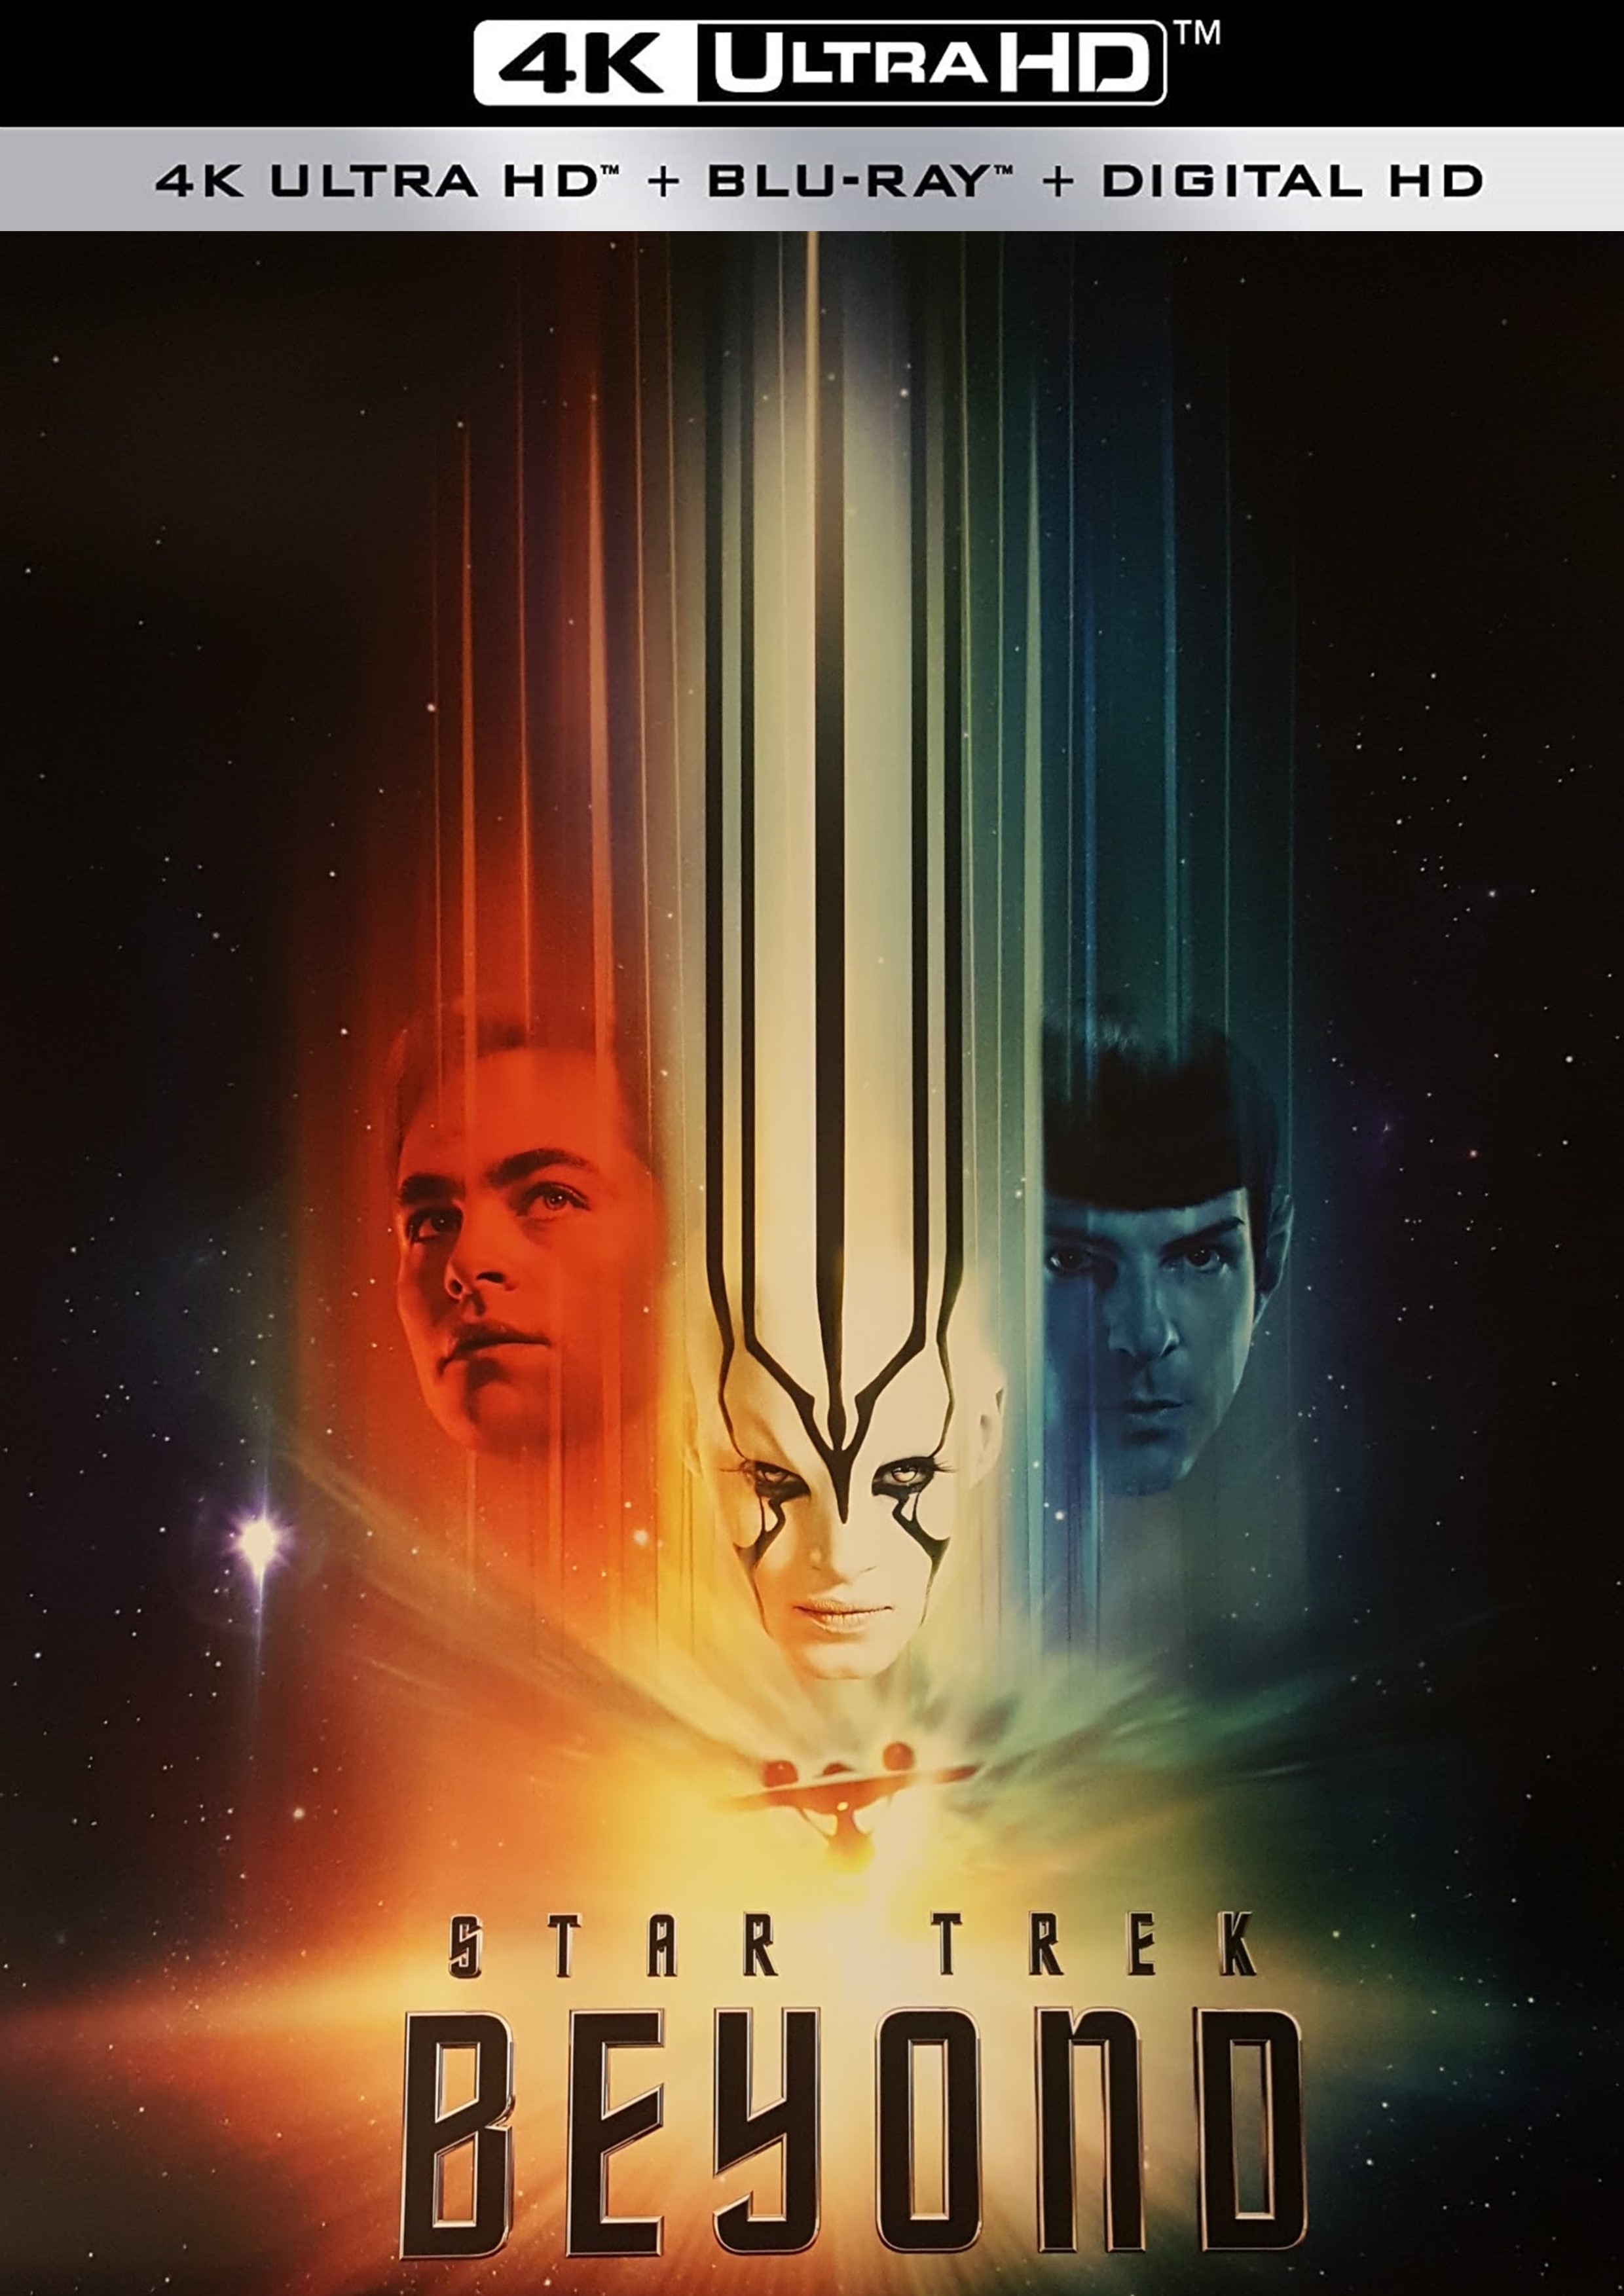 Stiahni si UHD Filmy Star Trek: Do neznama / Star Trek:  Beyond (2016)(CZ/EN)(2160p 4K BRRip) = CSFD 73%